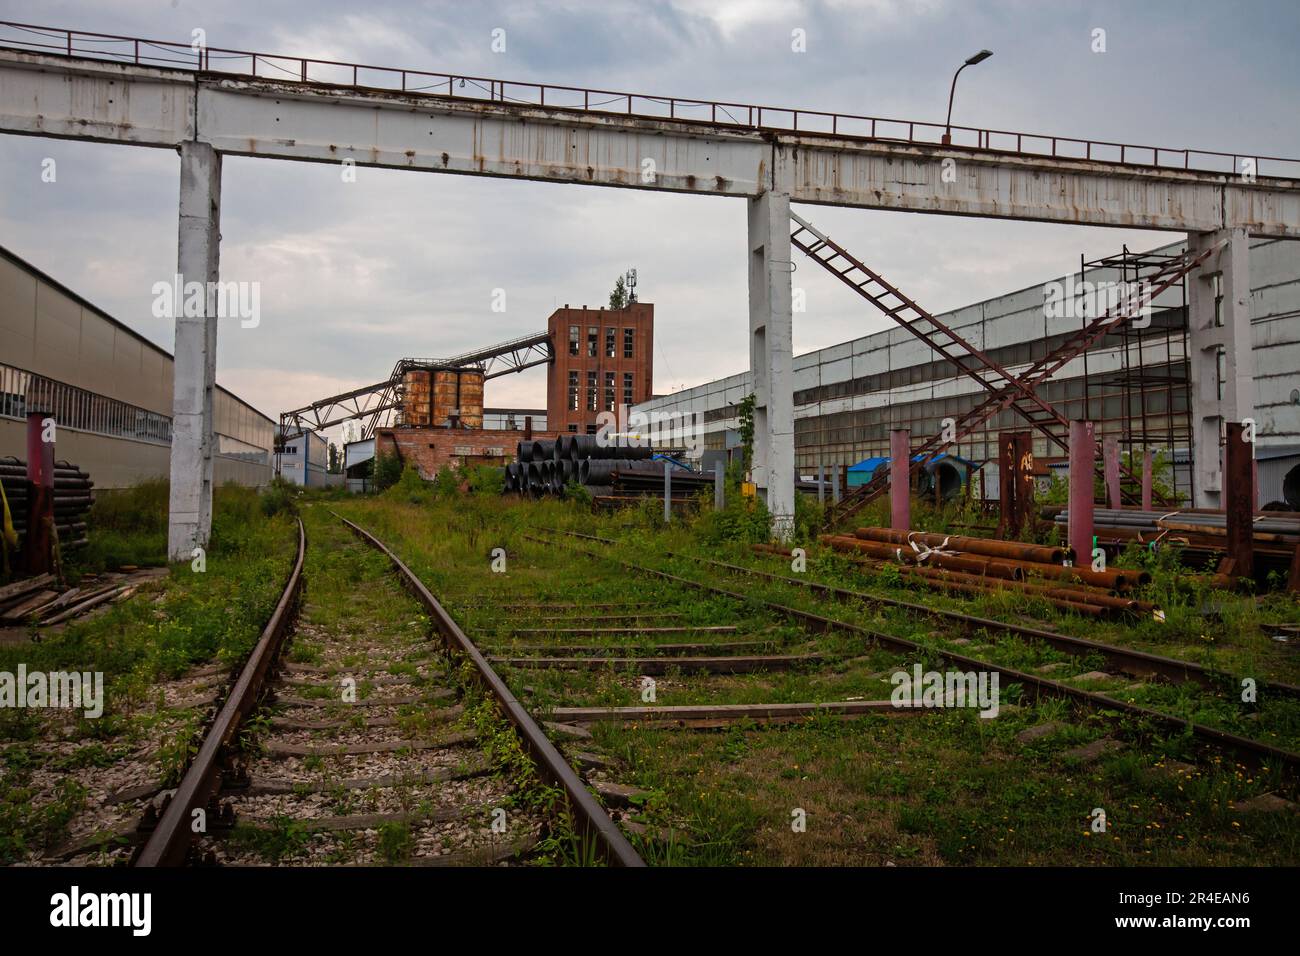 Veraltete sowjetische Fabrik. Schienen, Betonkranbrücke und Ziegelturm mit zerbrochenen Fenstern Stockfoto